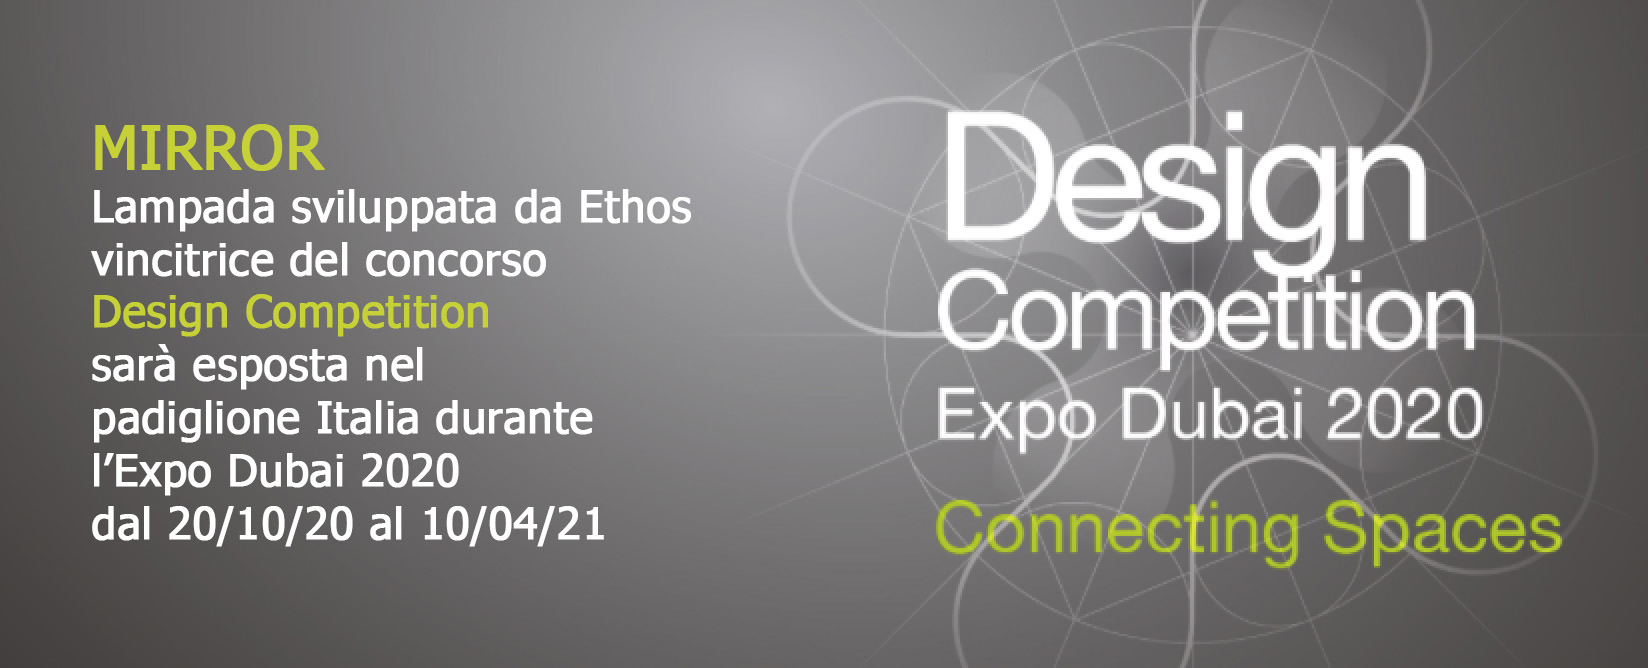 Design Competition Expo Dubai 2020